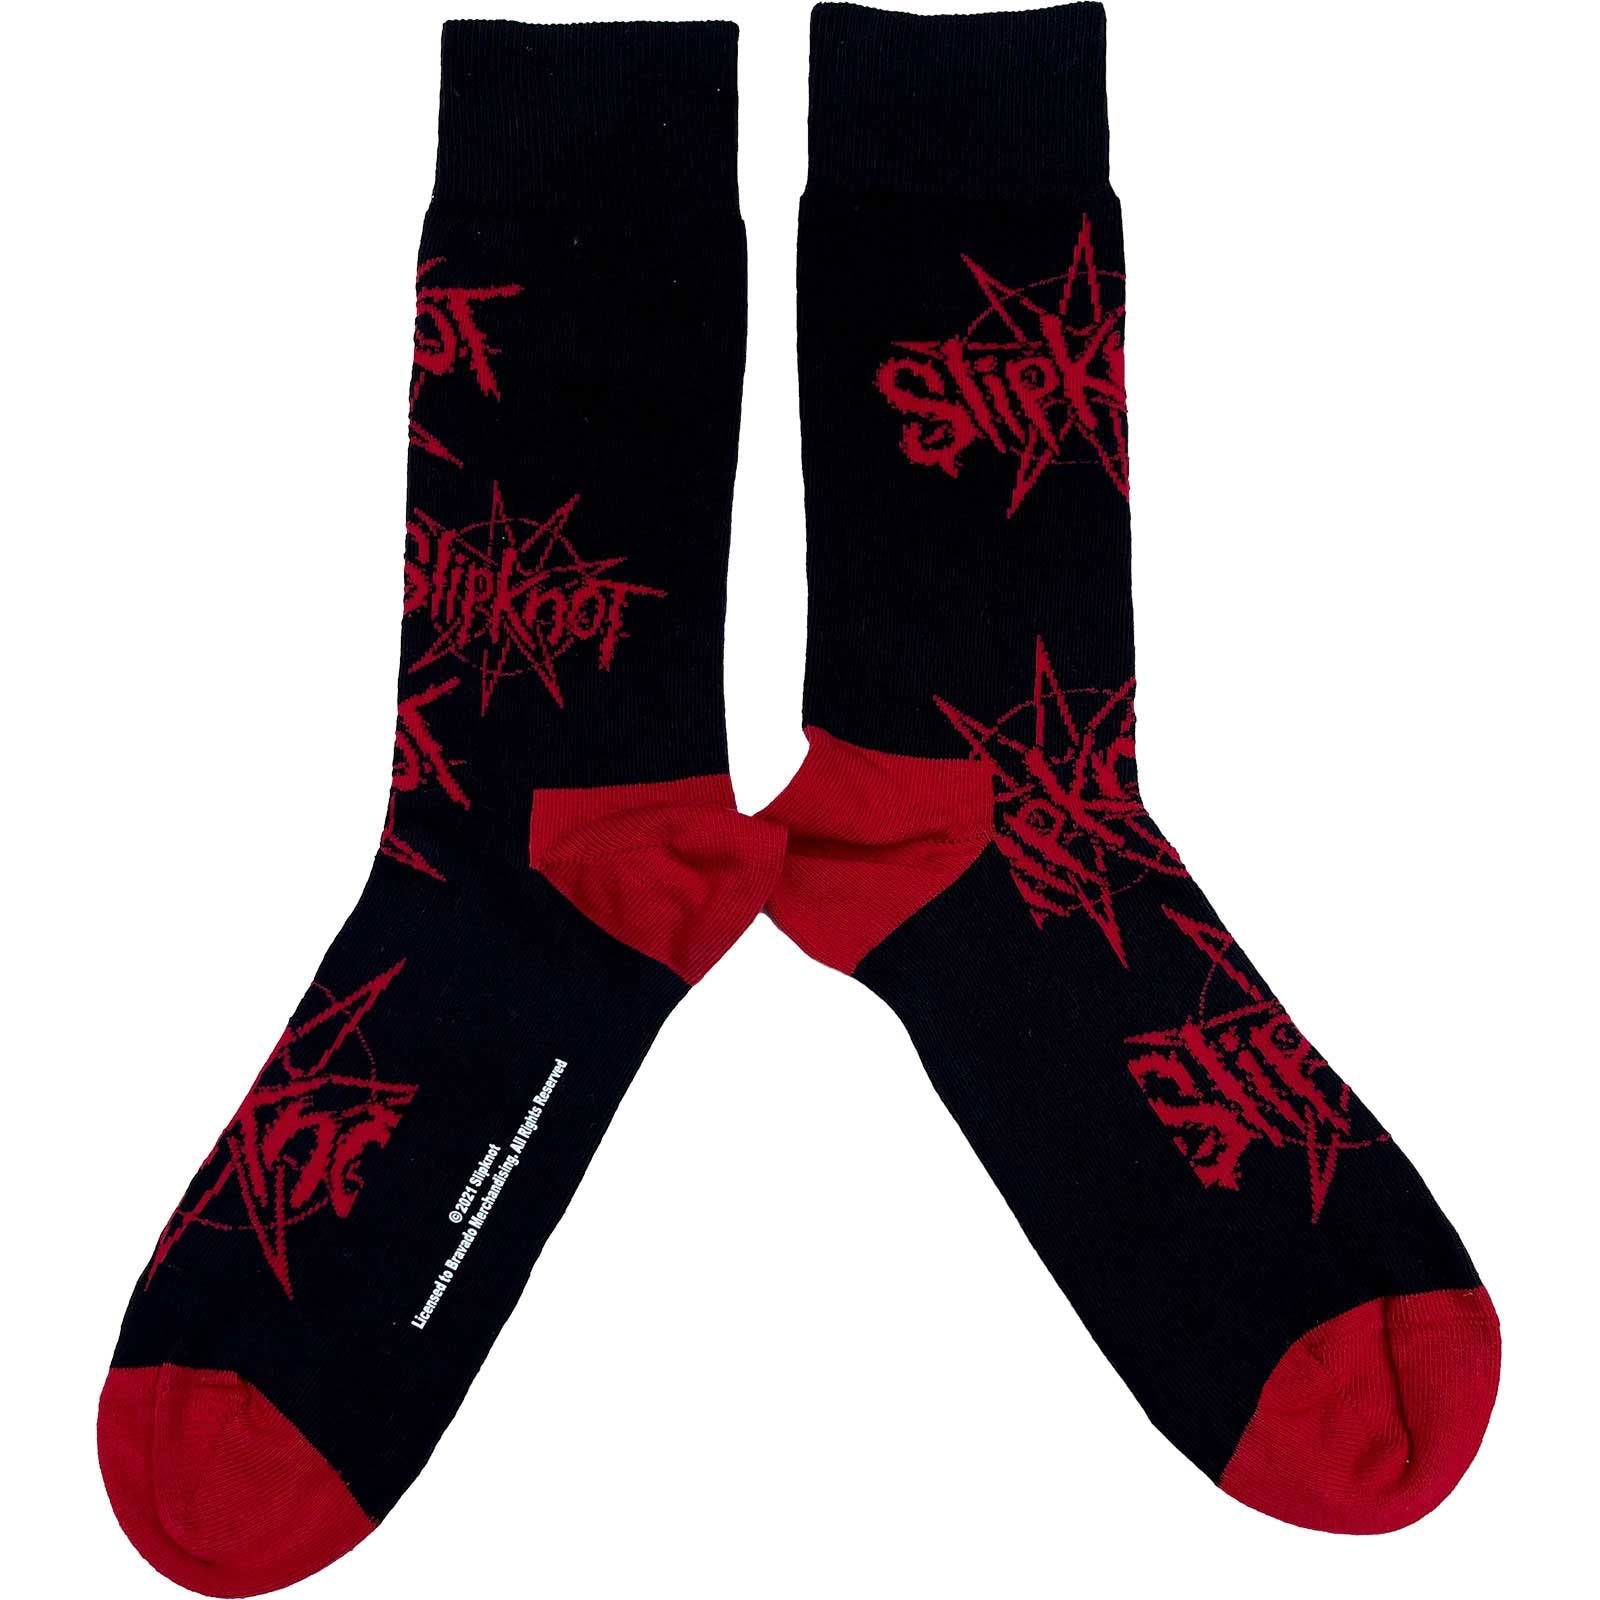 Slipknot - Logo And Nonagram Socks